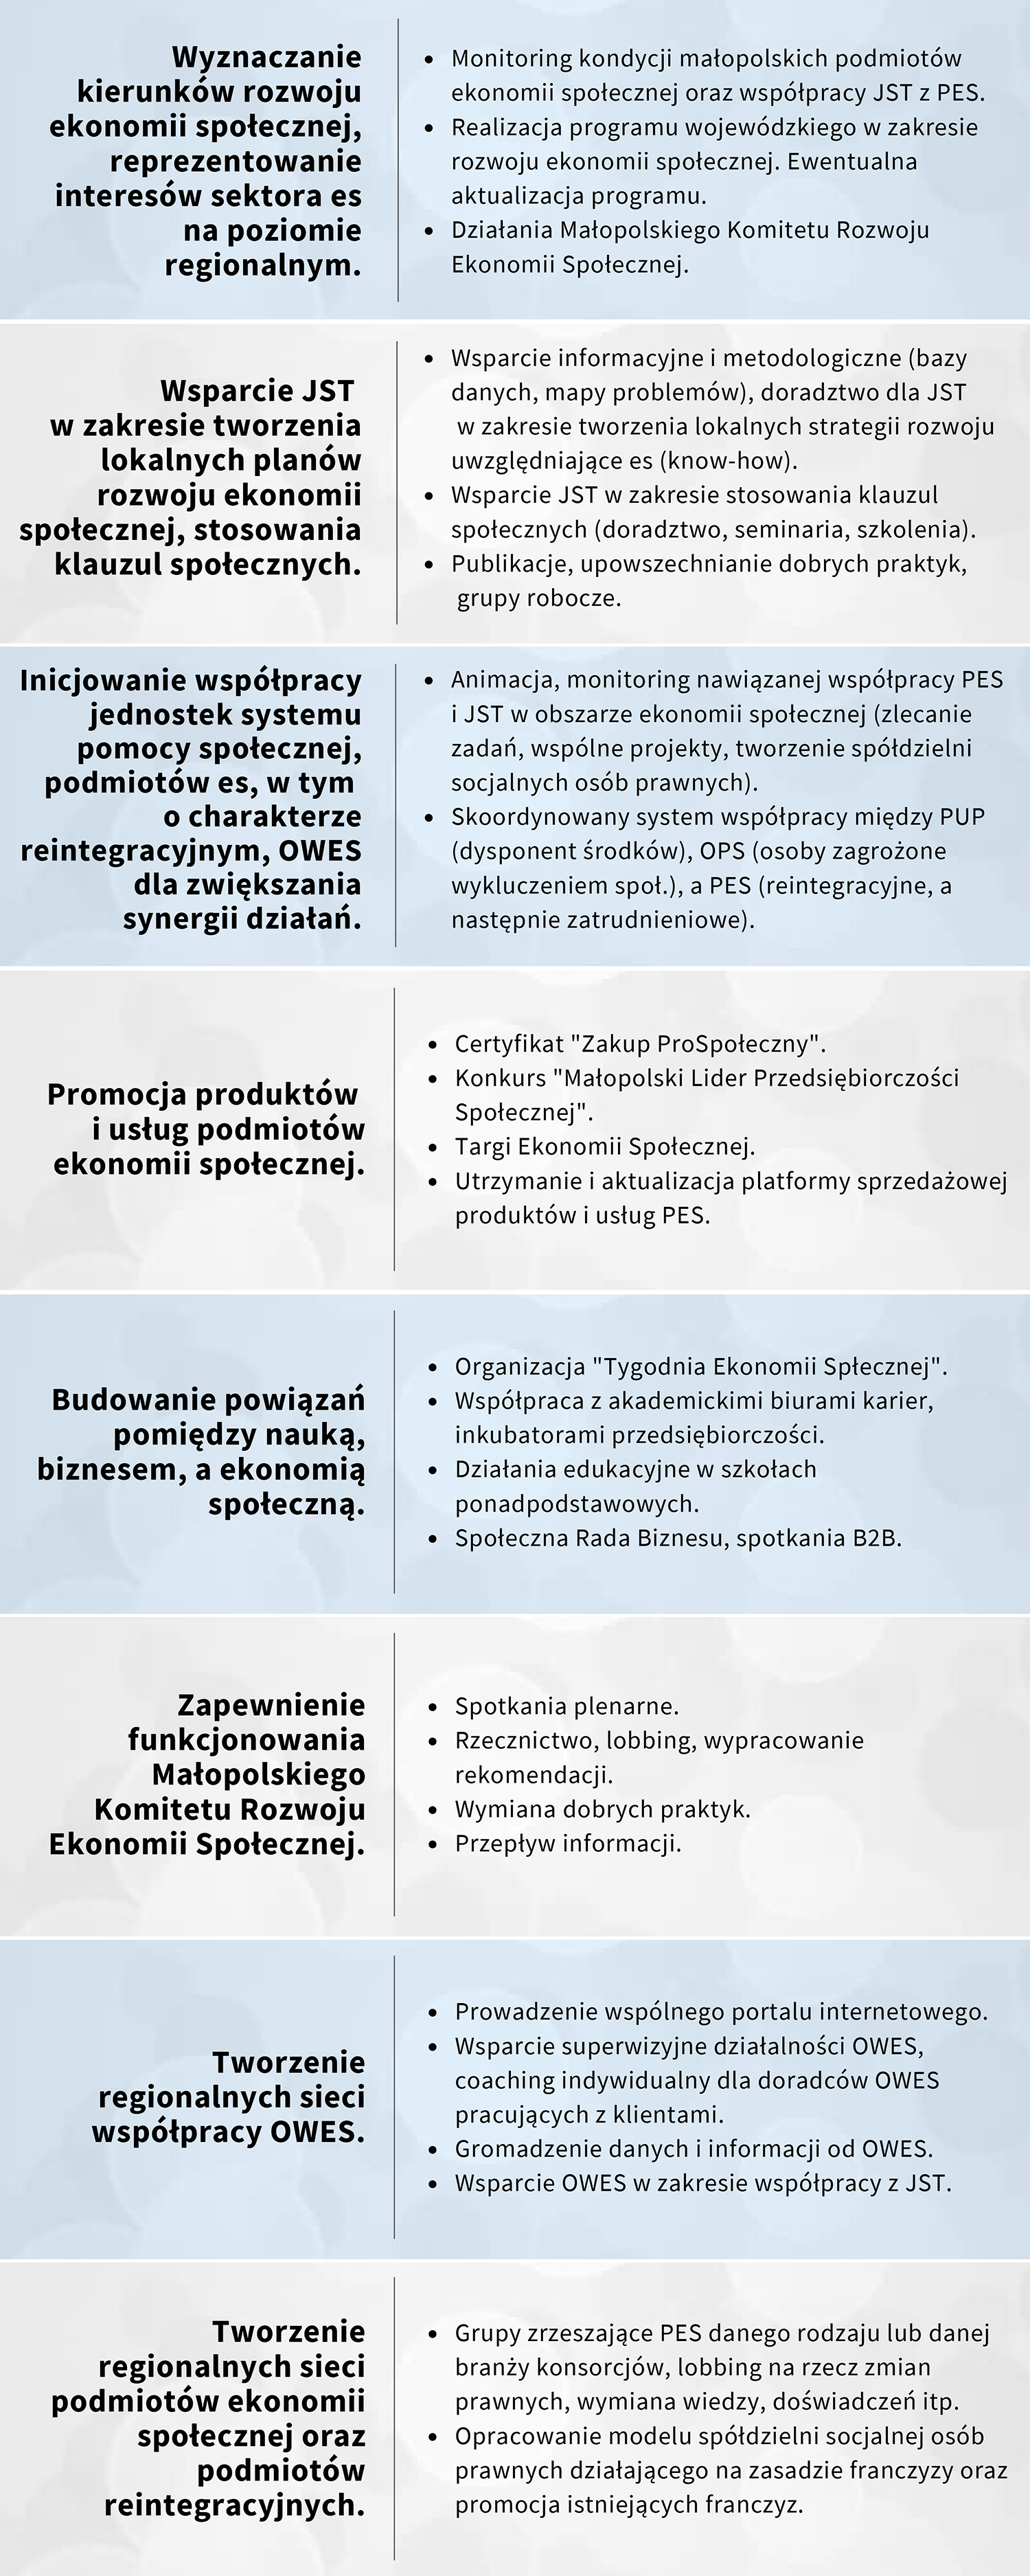 Schemat głównych działań Małopolskiego Ośrodka Koordynacji Ekonomii Społecznej.